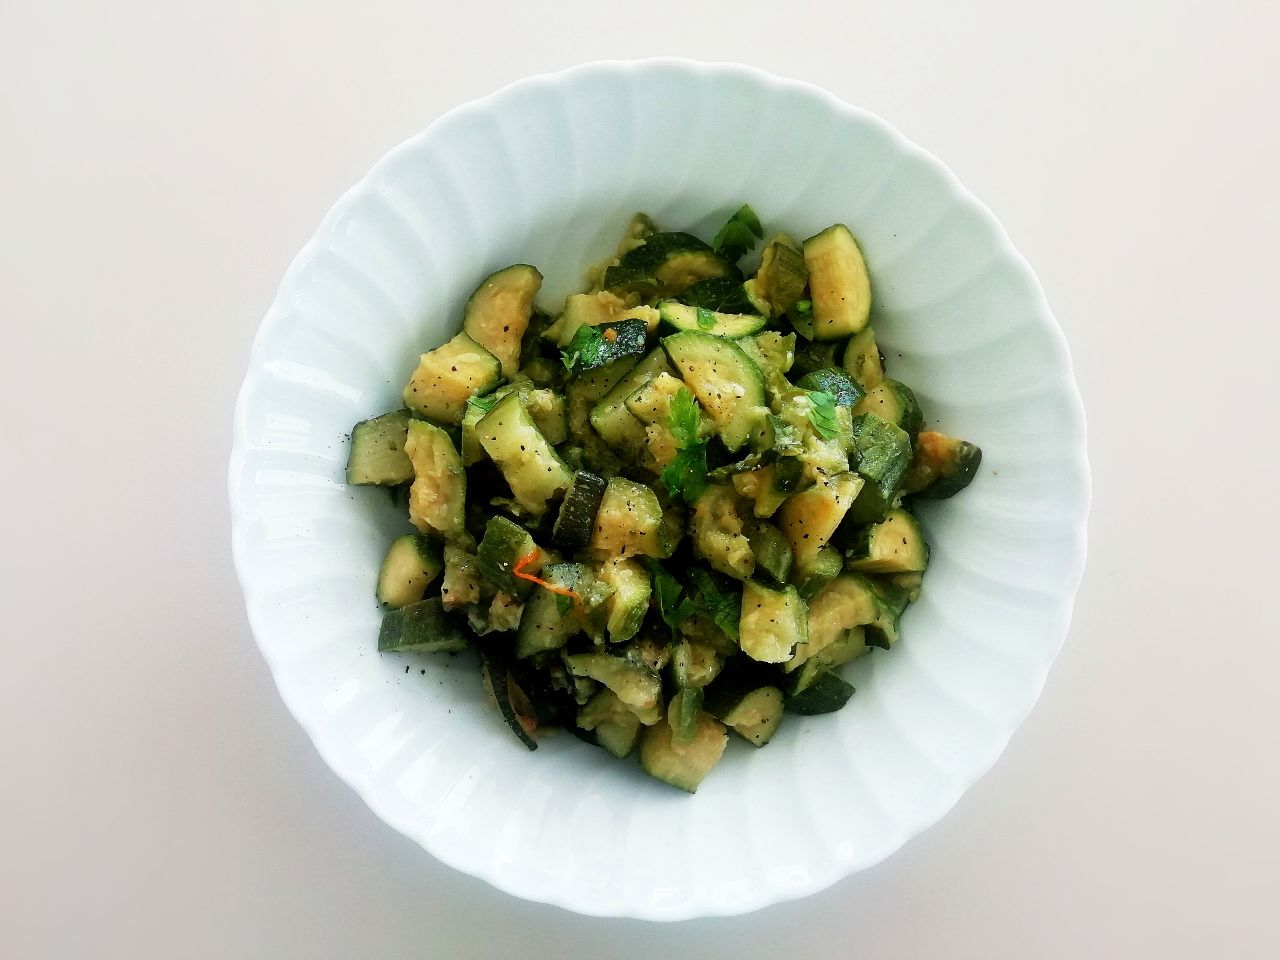 Contorni a base di verdure senza burro: zucchine trifolate in padella con prezzemolo e olio evo!